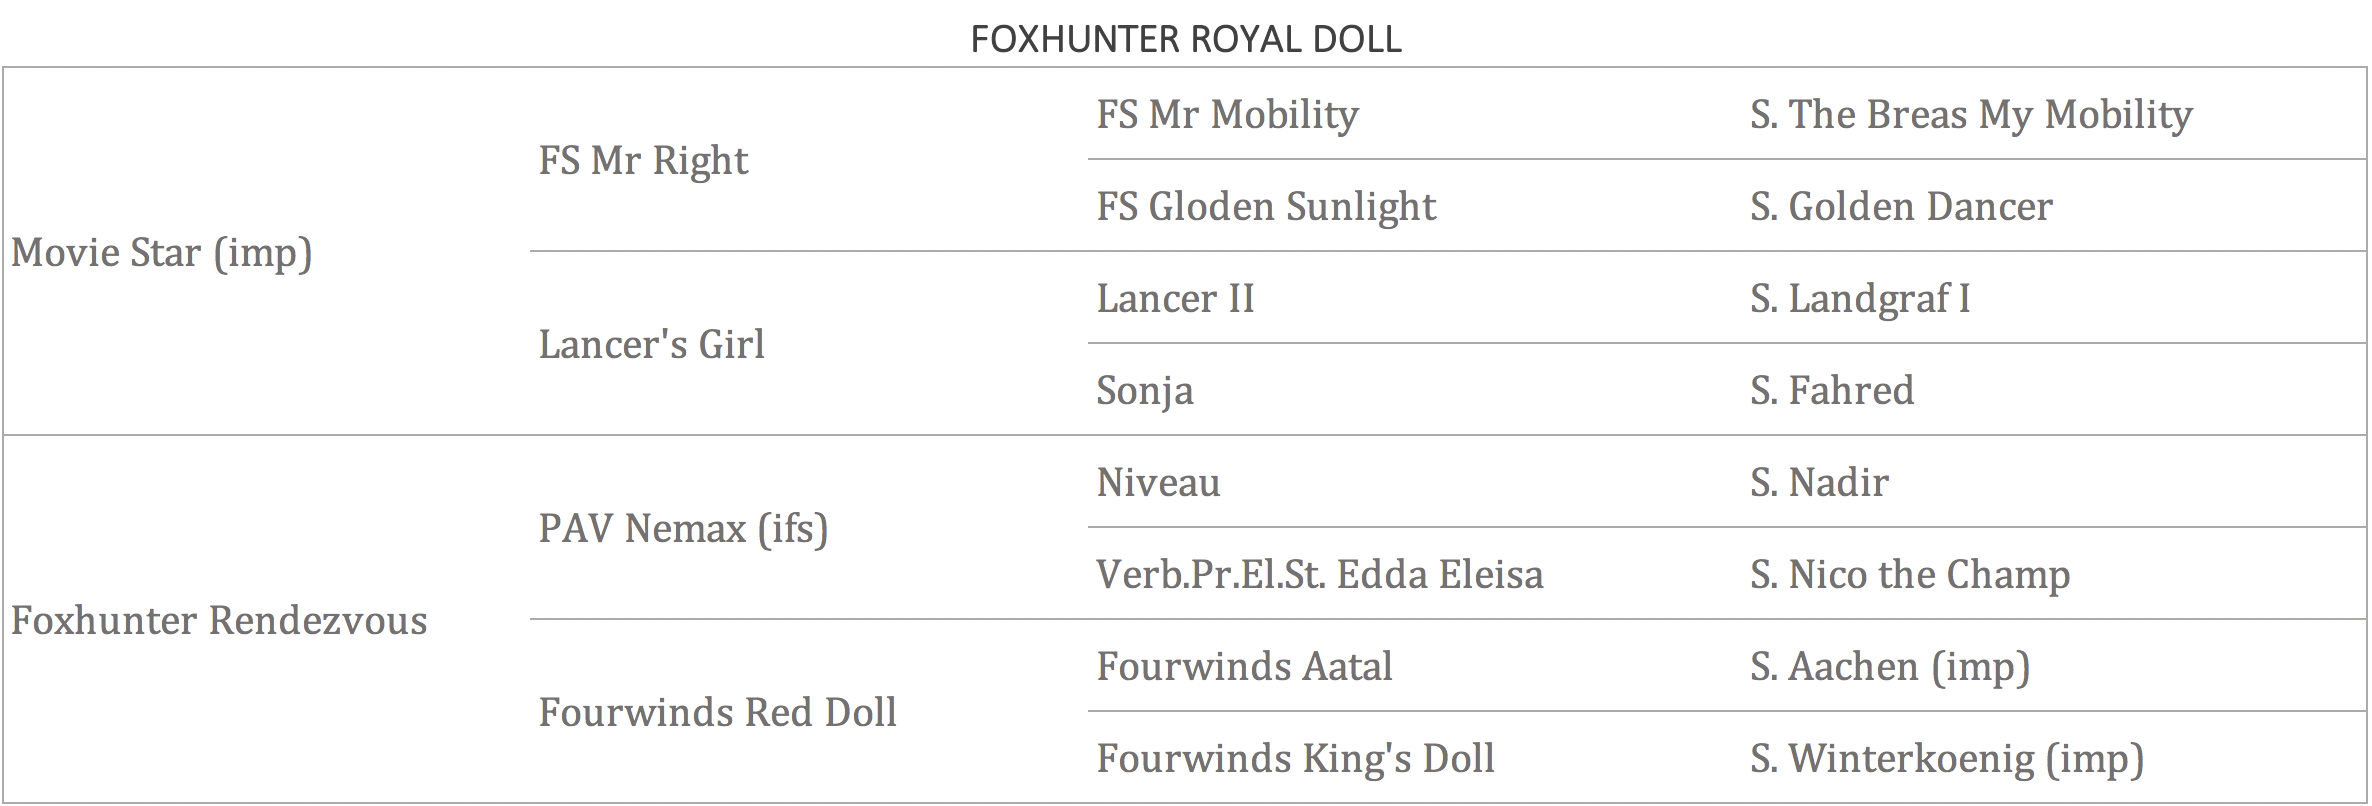 Foxhunter Royal Doll.png